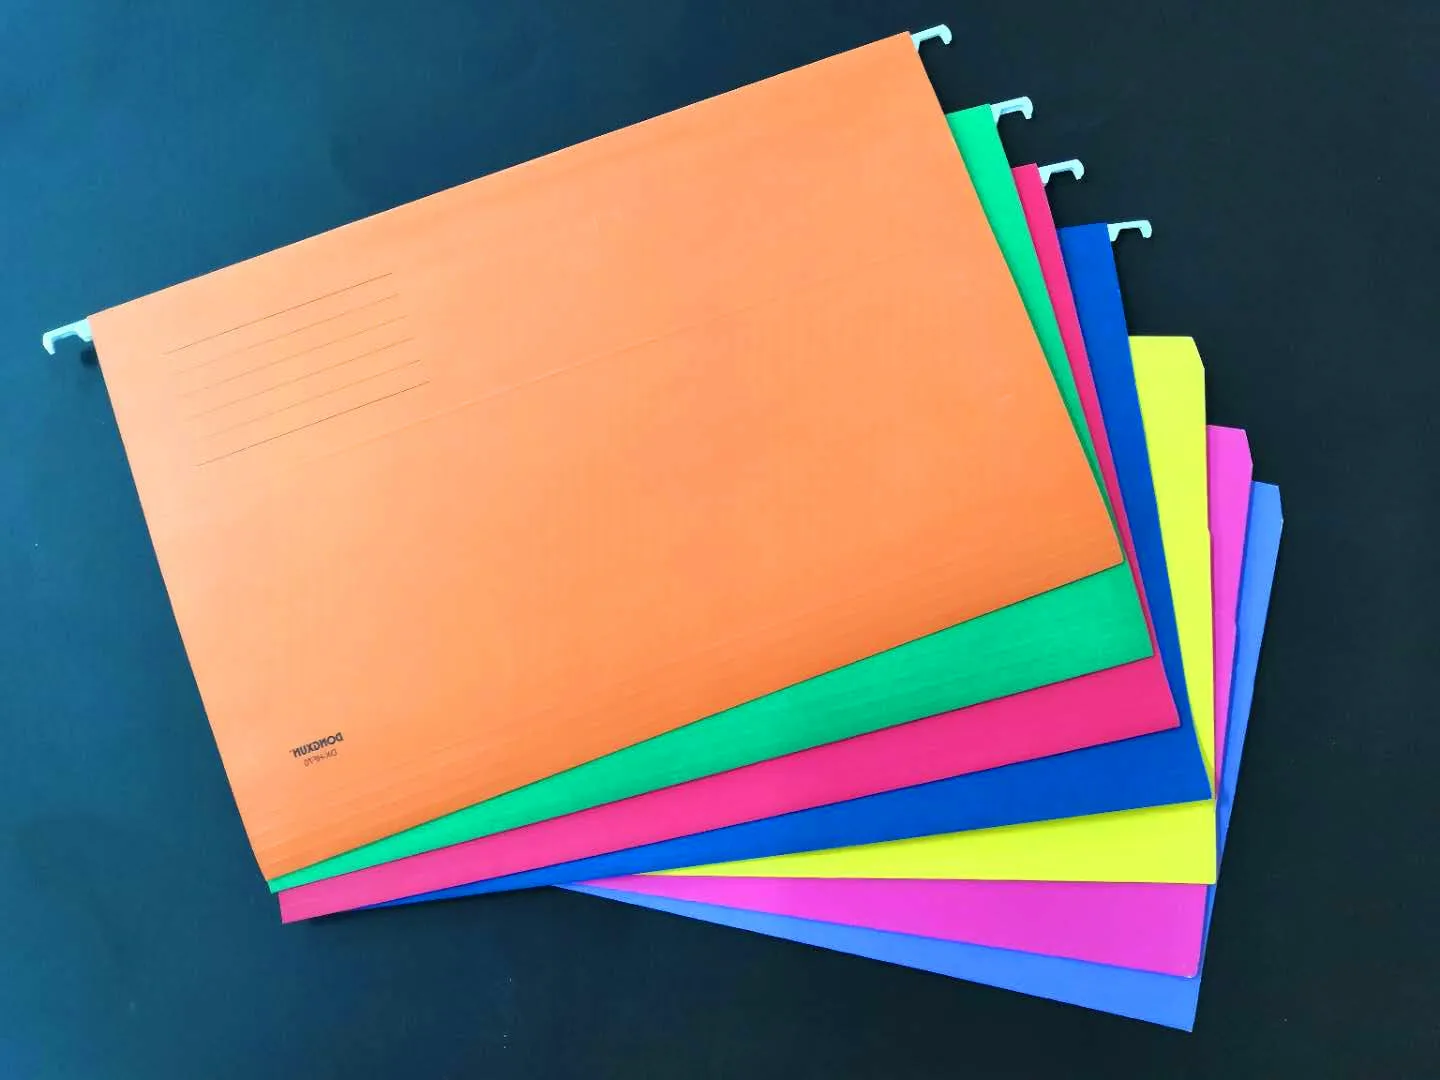 Suspension FC  hanging file organizer folder 180gsm color paper file folder assorted colors